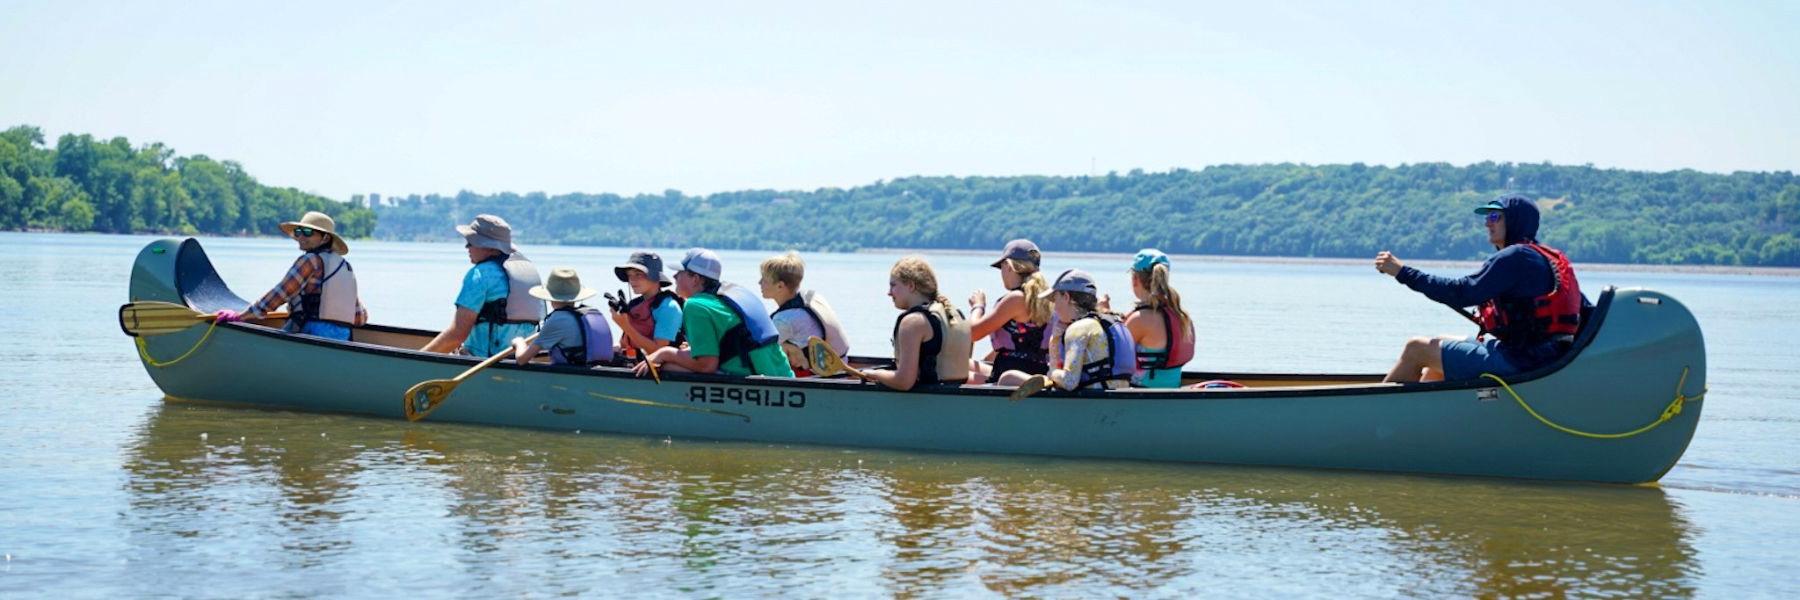 泥泞大冒险带领导游沿着密西西比河和密苏里河游览.